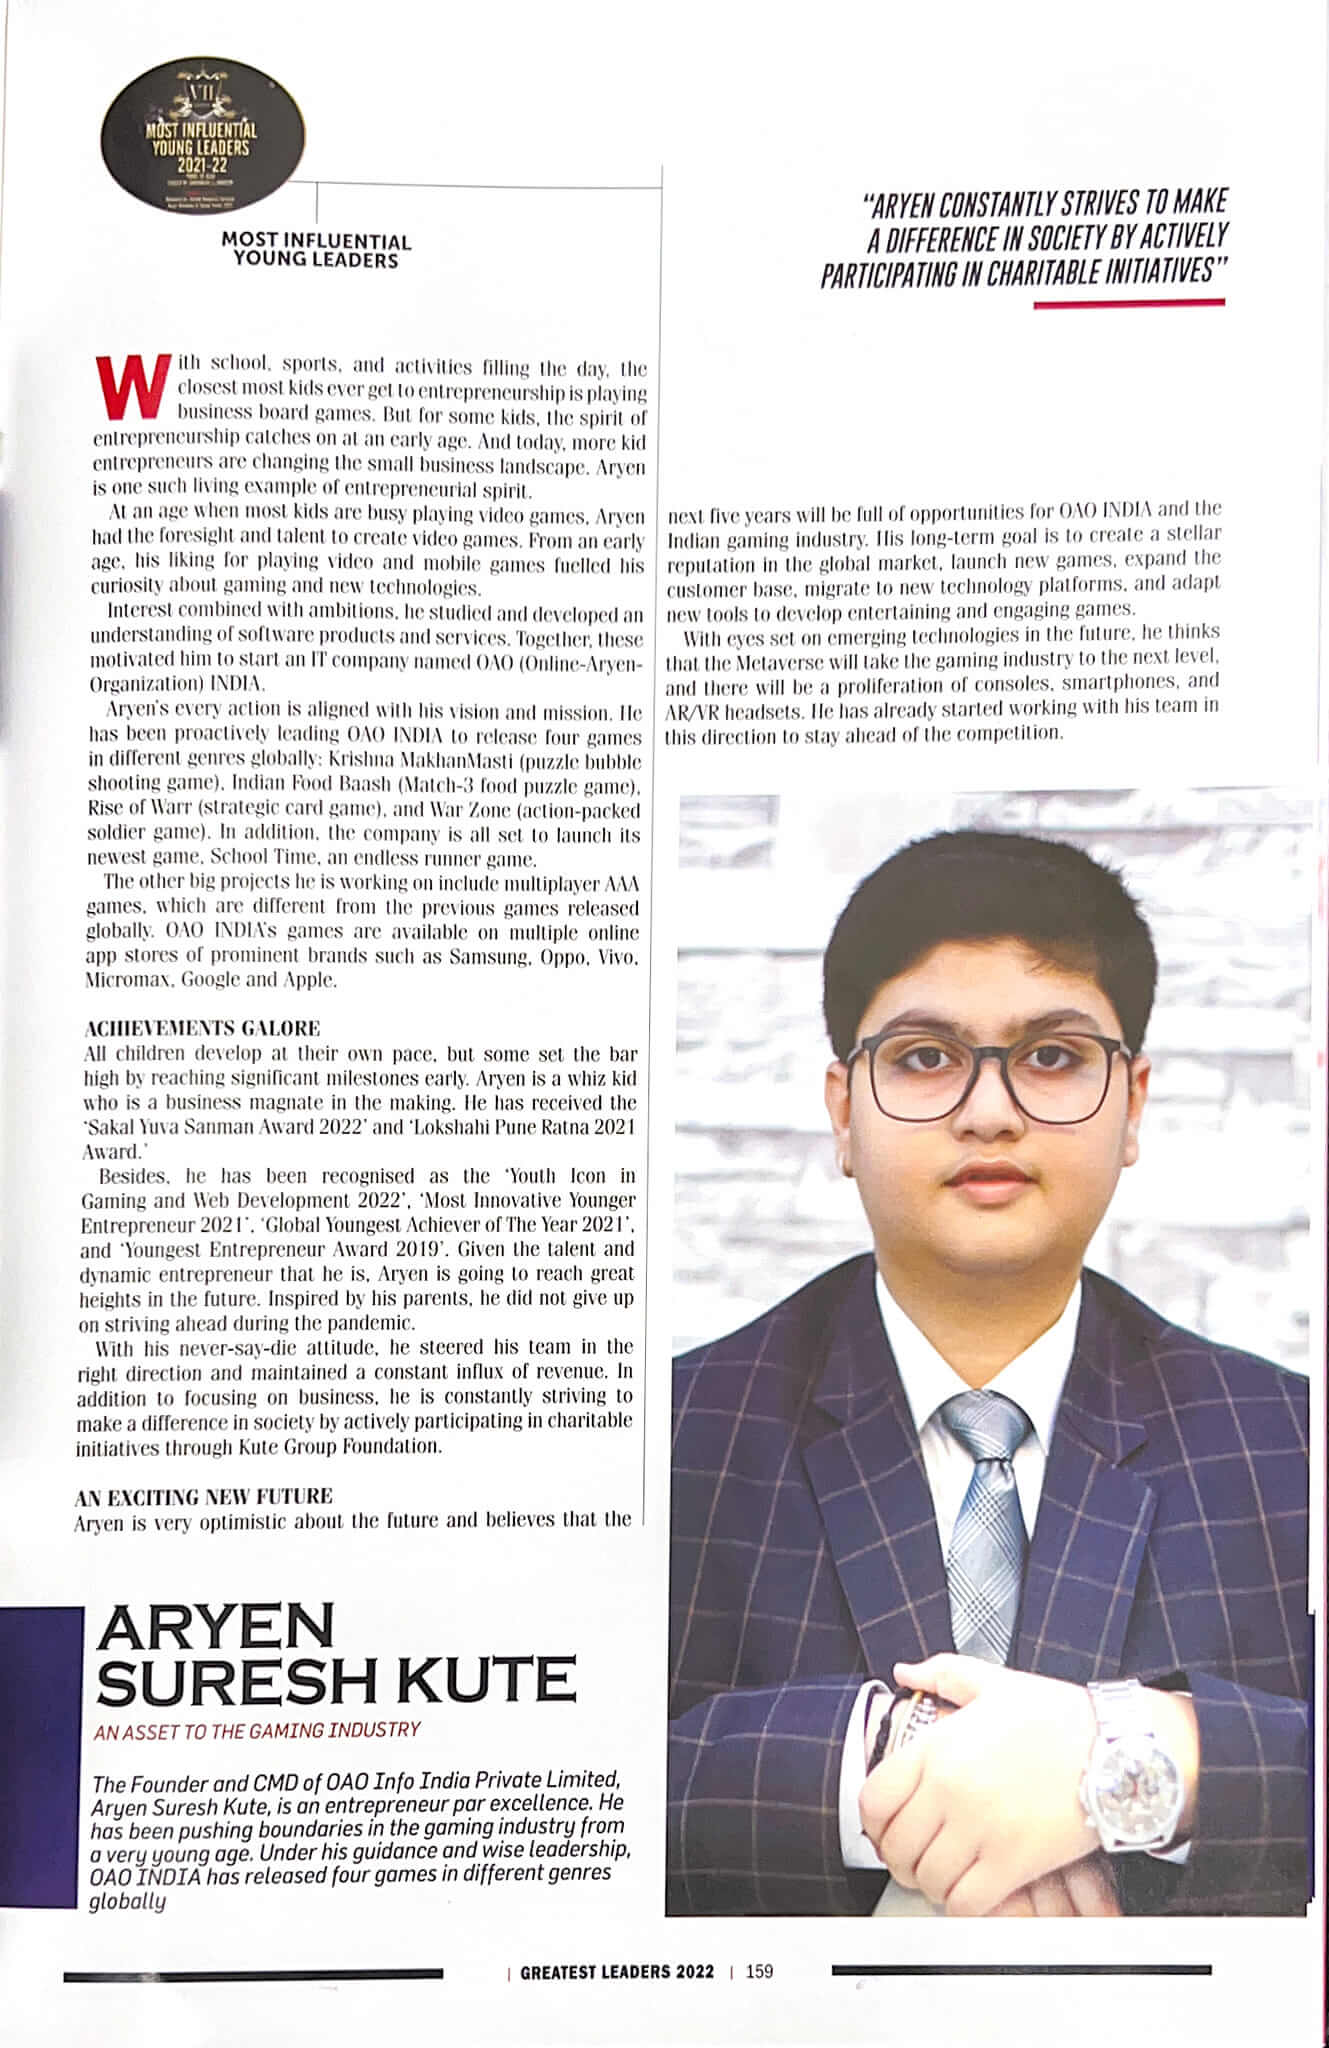 AsiaOne magazine featuring Aryen Suresh Kute